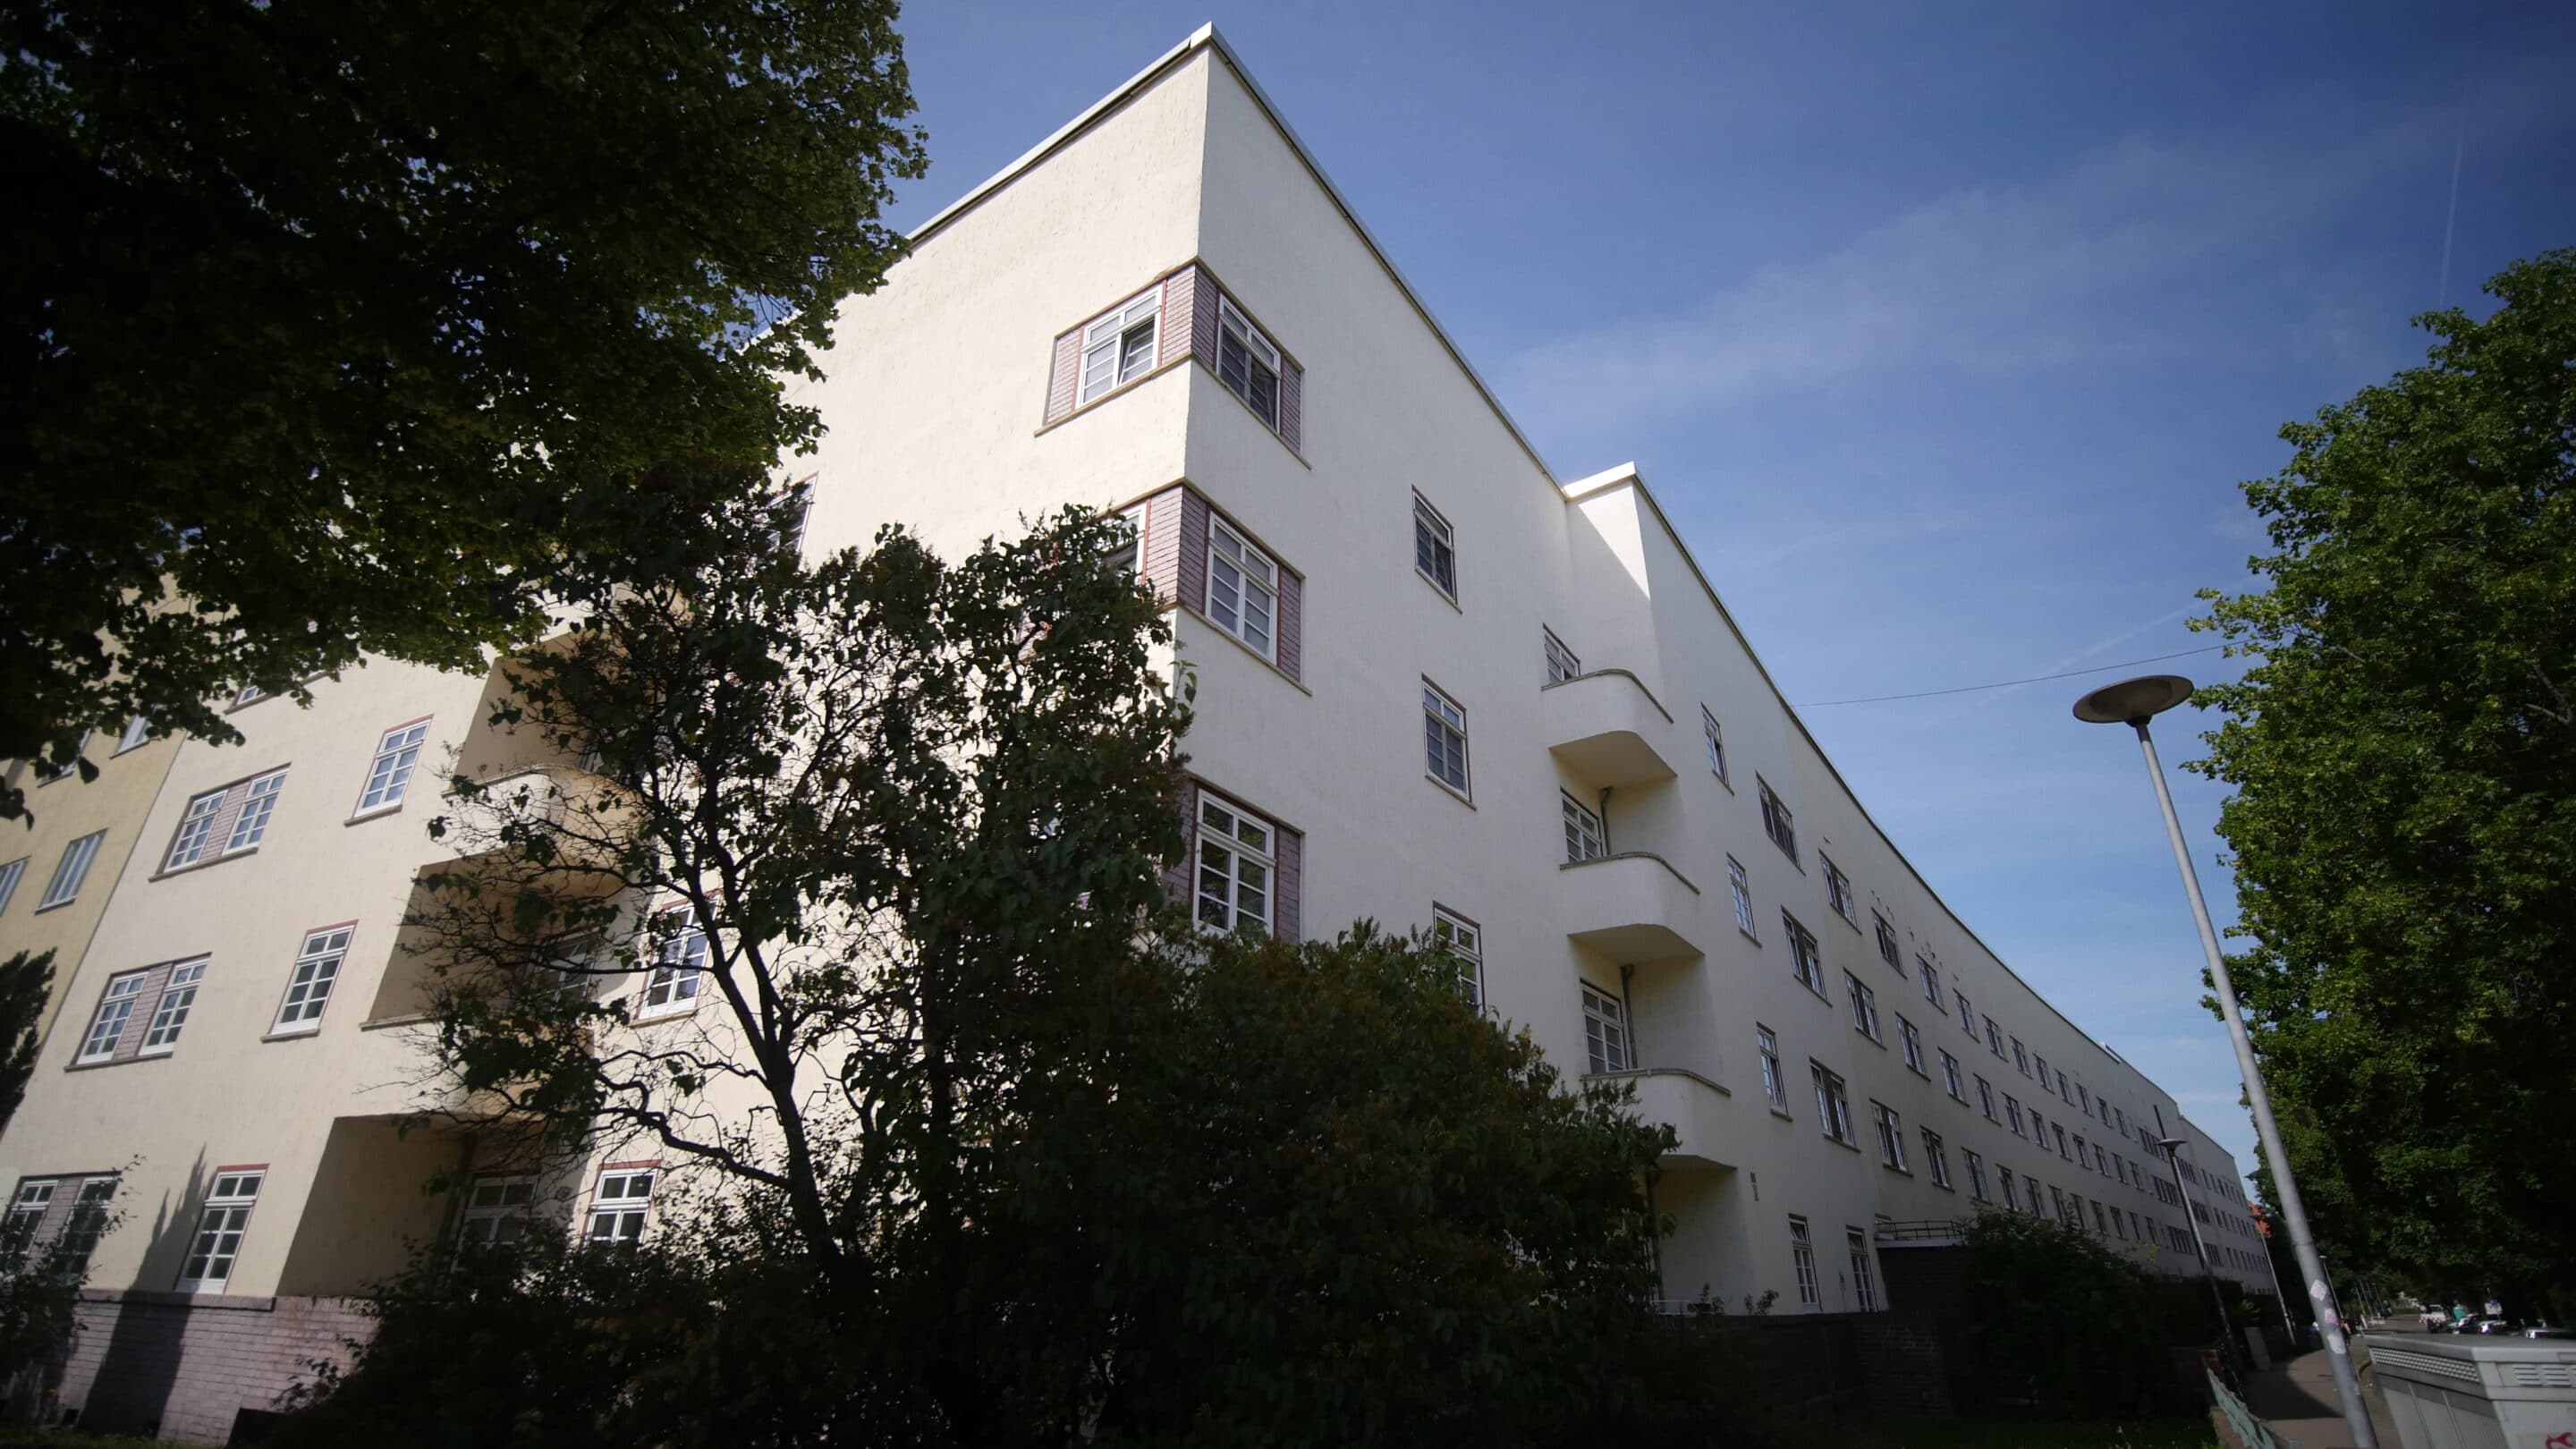 Bauhaus Wohnkomplex Erfurt Hanseviertel